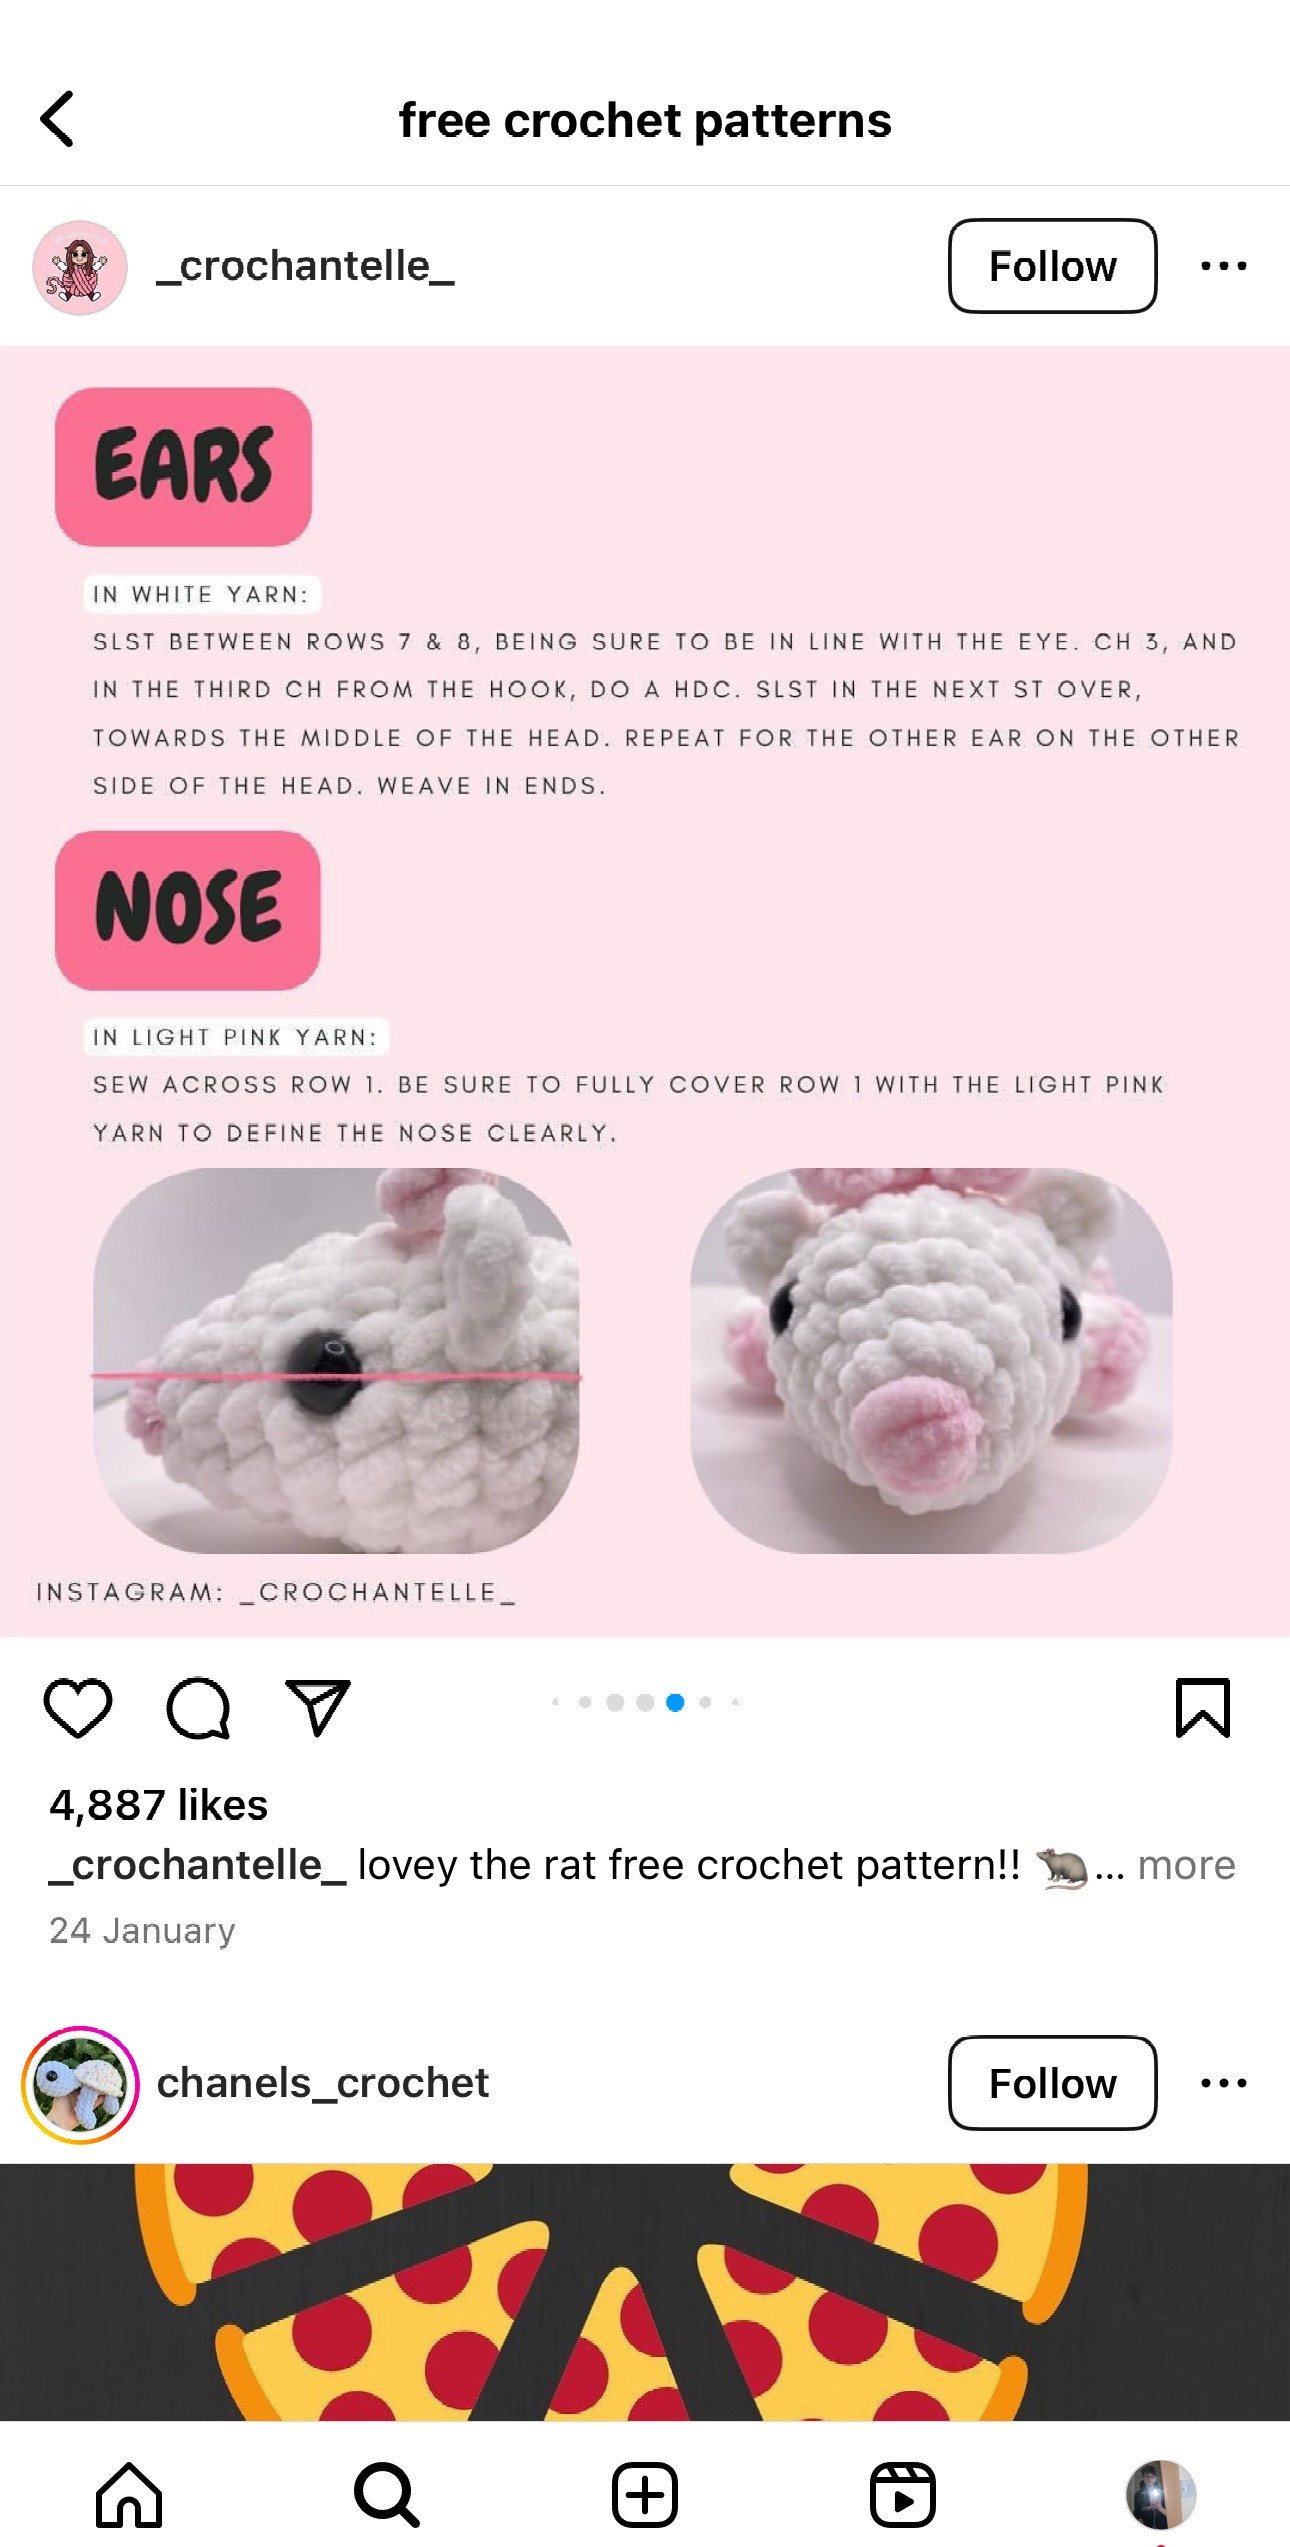 lovey the rat free crochet pattern